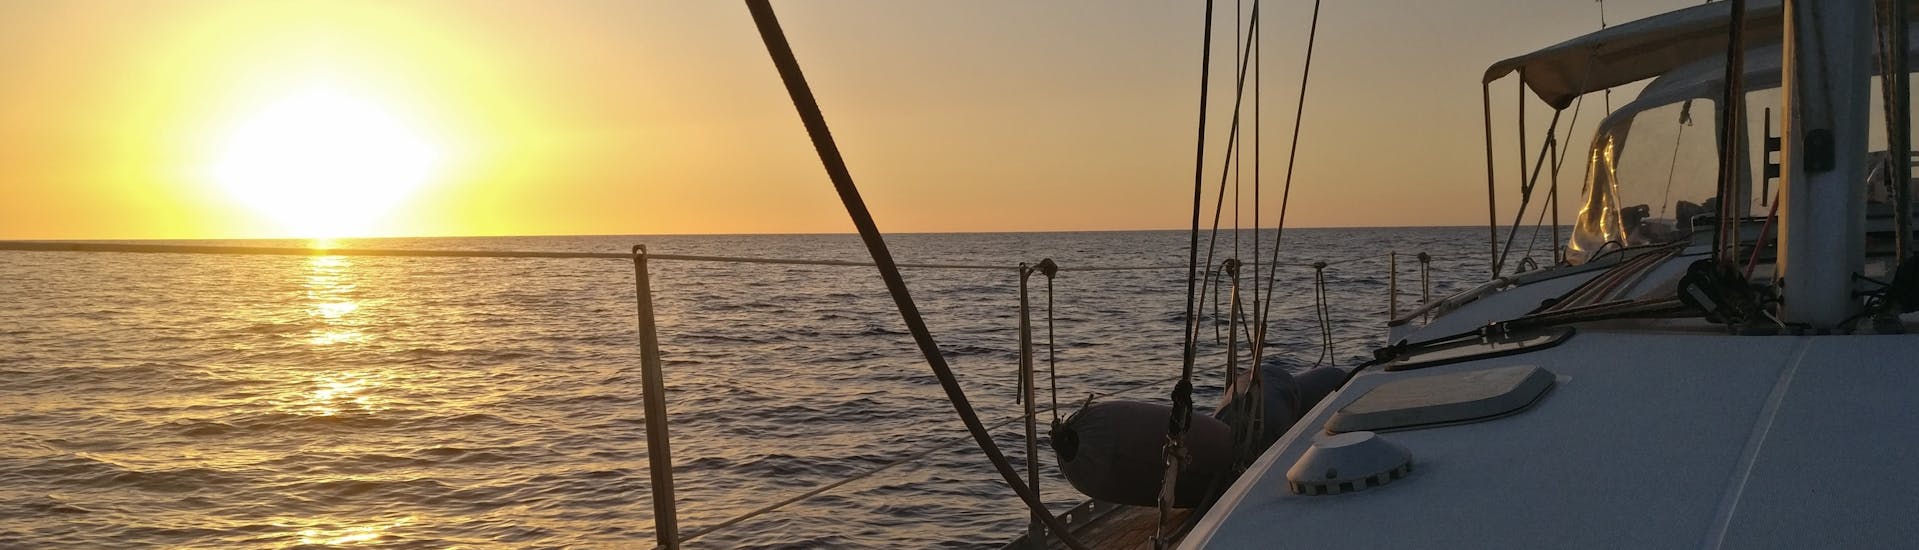 Vistas del mar al atardecer desde un barco de Quarantesimo Parallelo Leuca durante el paseo en velero desde Leuca a la costa de Salento.